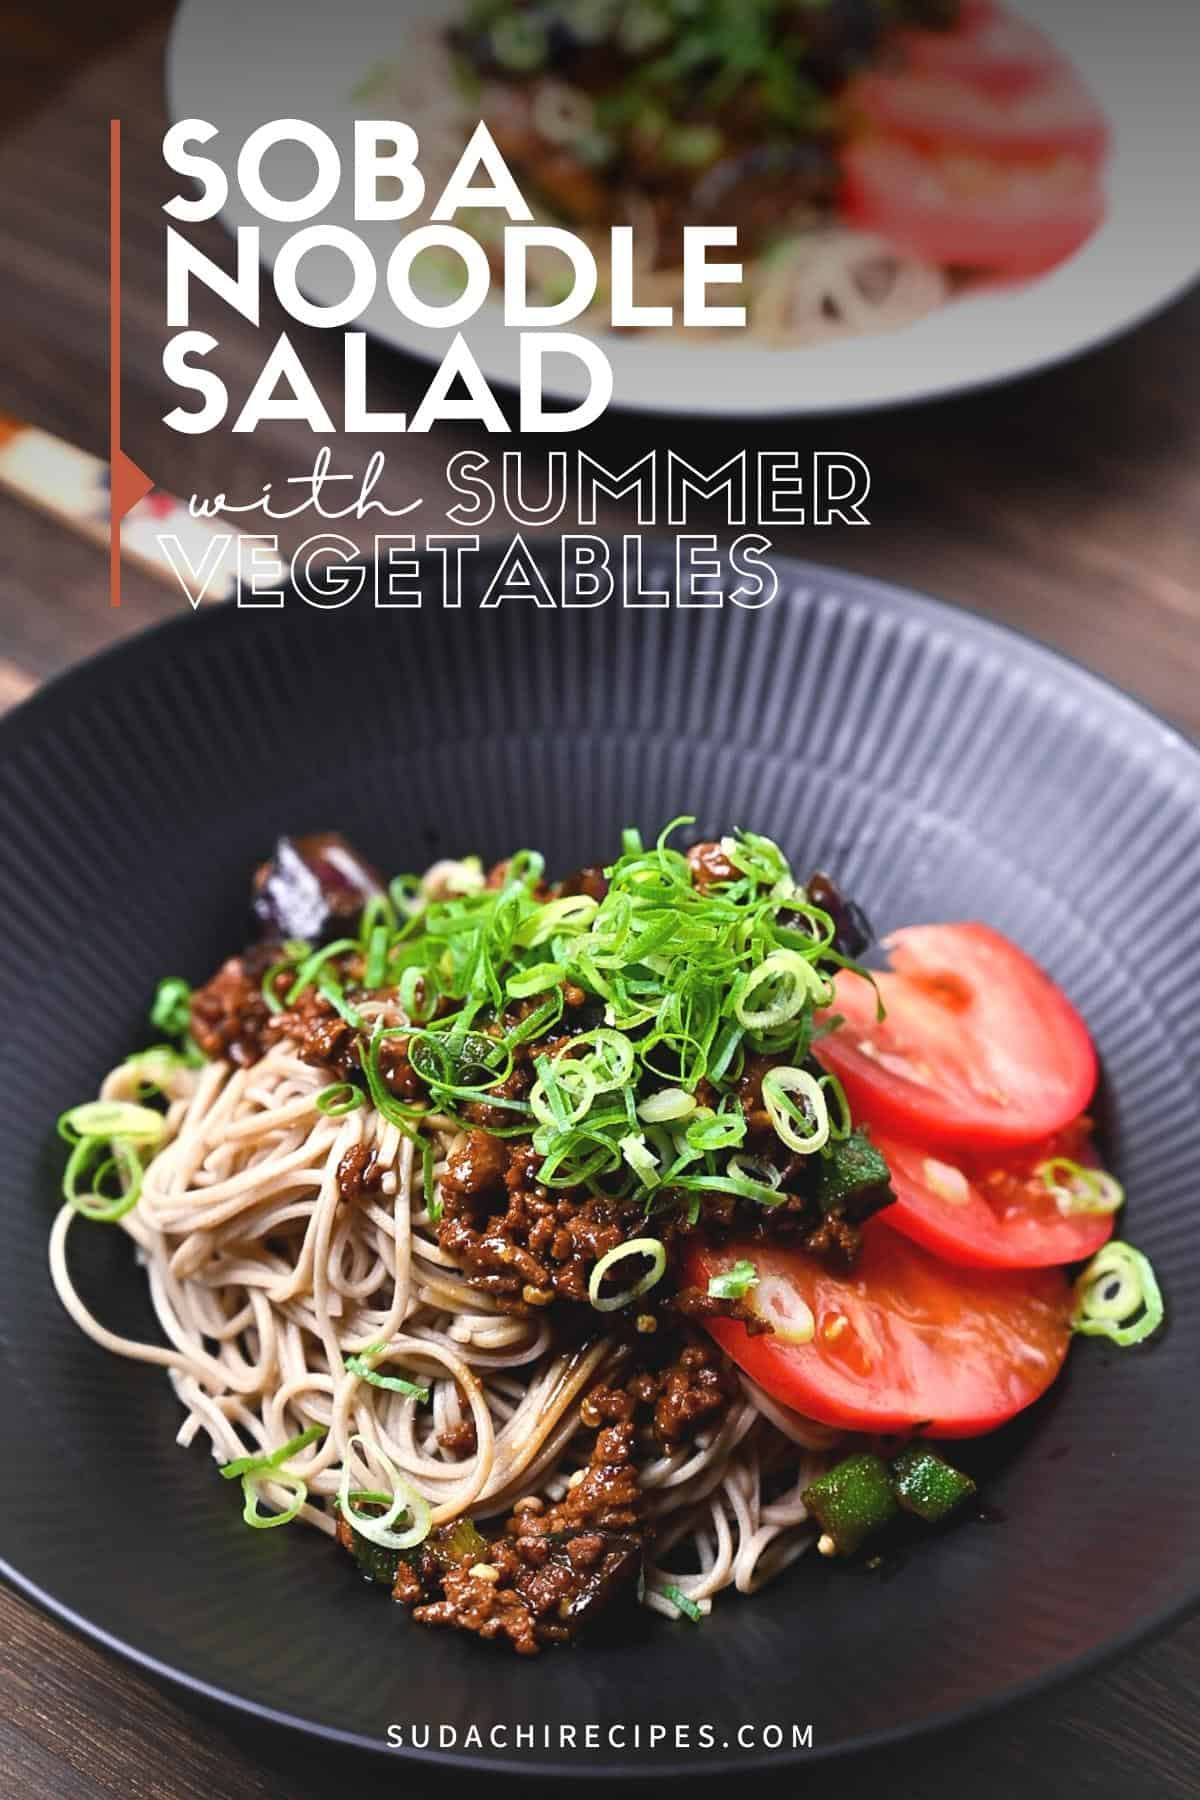 Soba noodle salad with summer vegetables served on a black plate